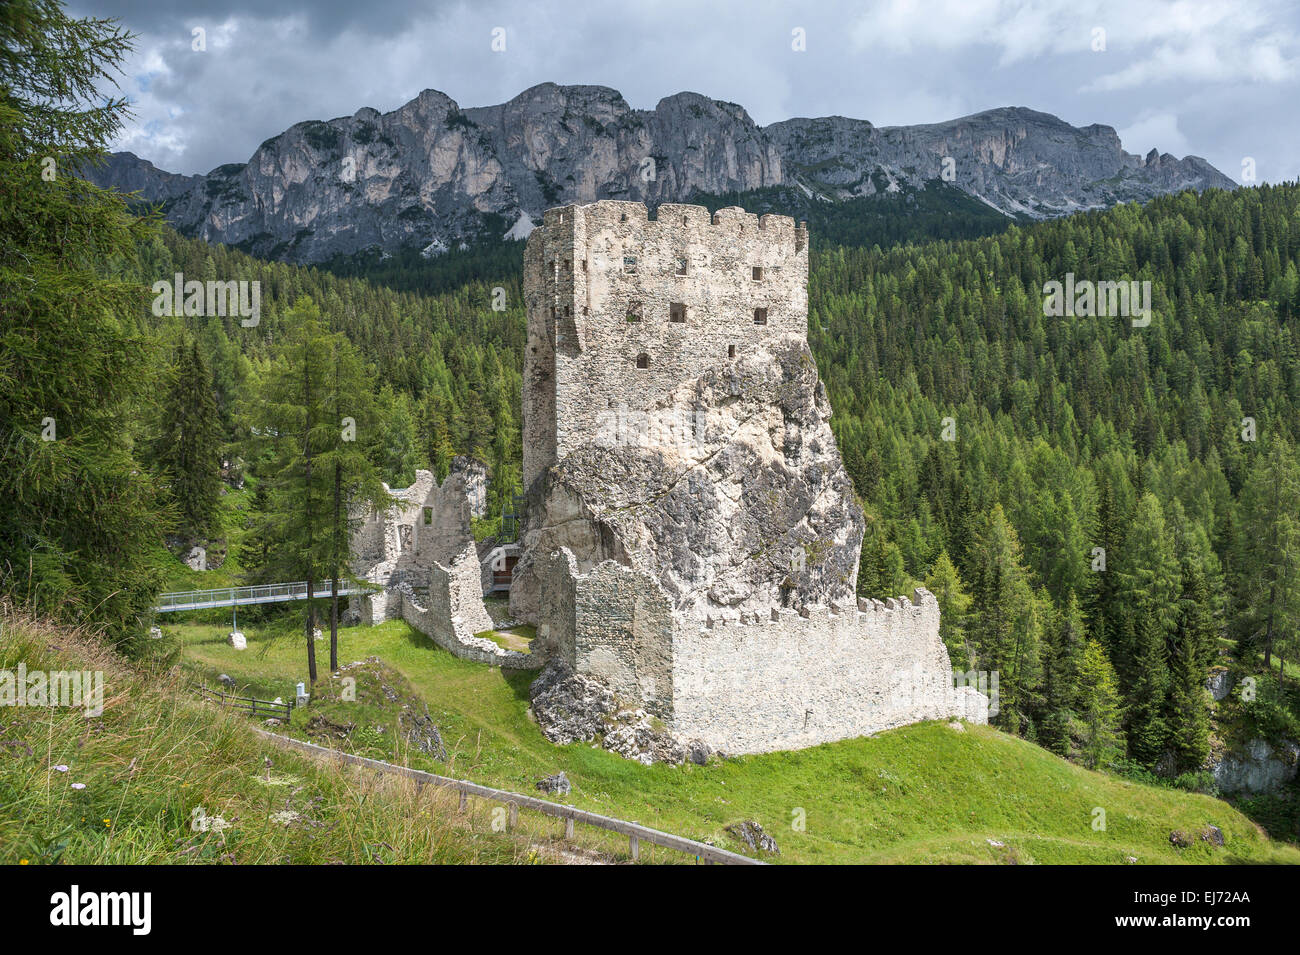 Ruins of Burg Buchenstein Castle, also Burg Andraz Castle, 11th century, below the Falzarego Pass, Livinallongo del Col di Lana Stock Photo